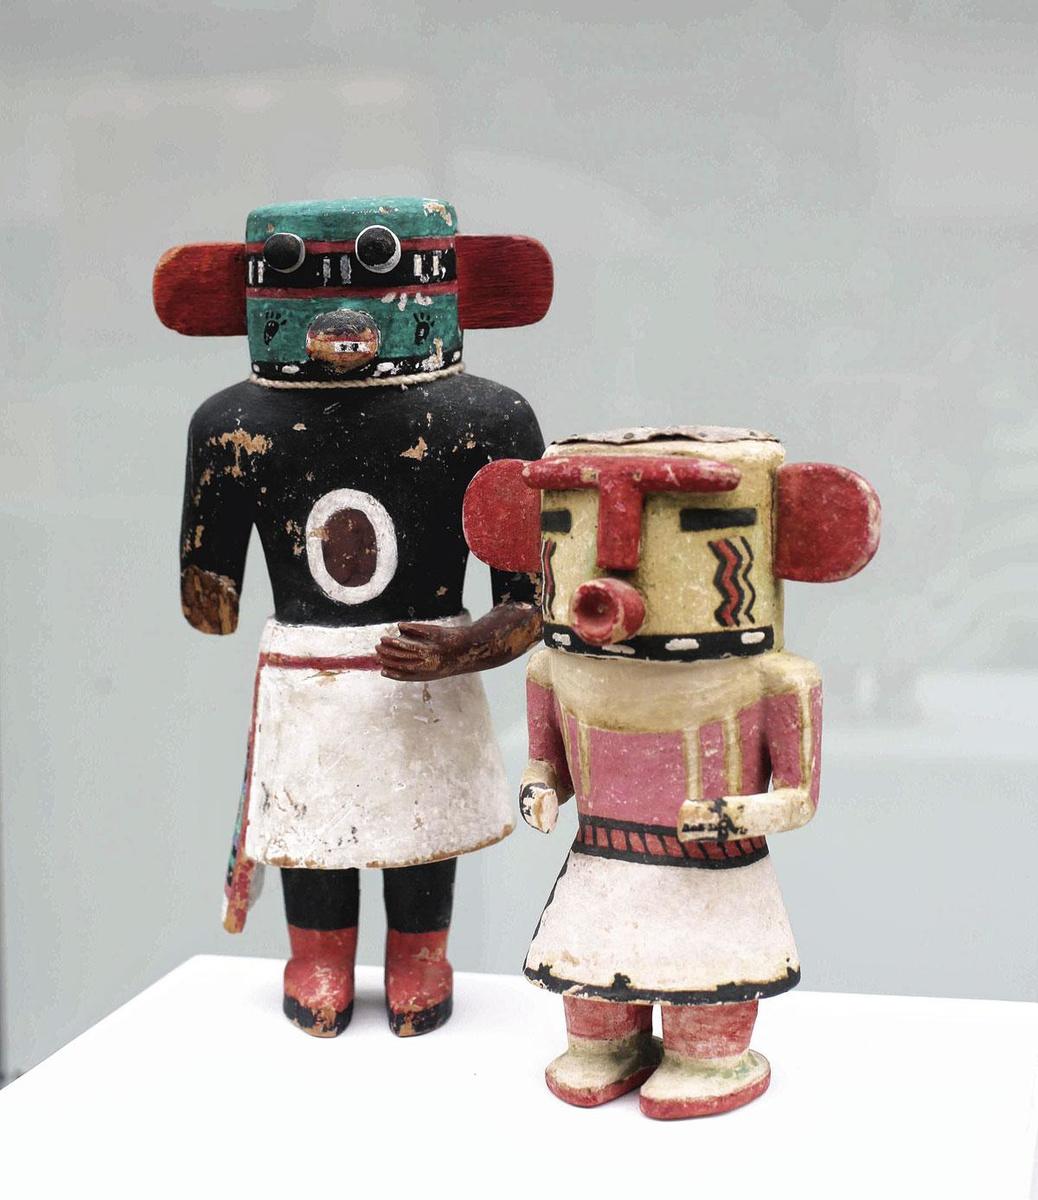 Polyvalente, la jeune entrepreneuse déniche aussi pour les amateurs des pièces plus historiques, comme ces poupées amérindiennes kachinas datées du début du xxe siècle.